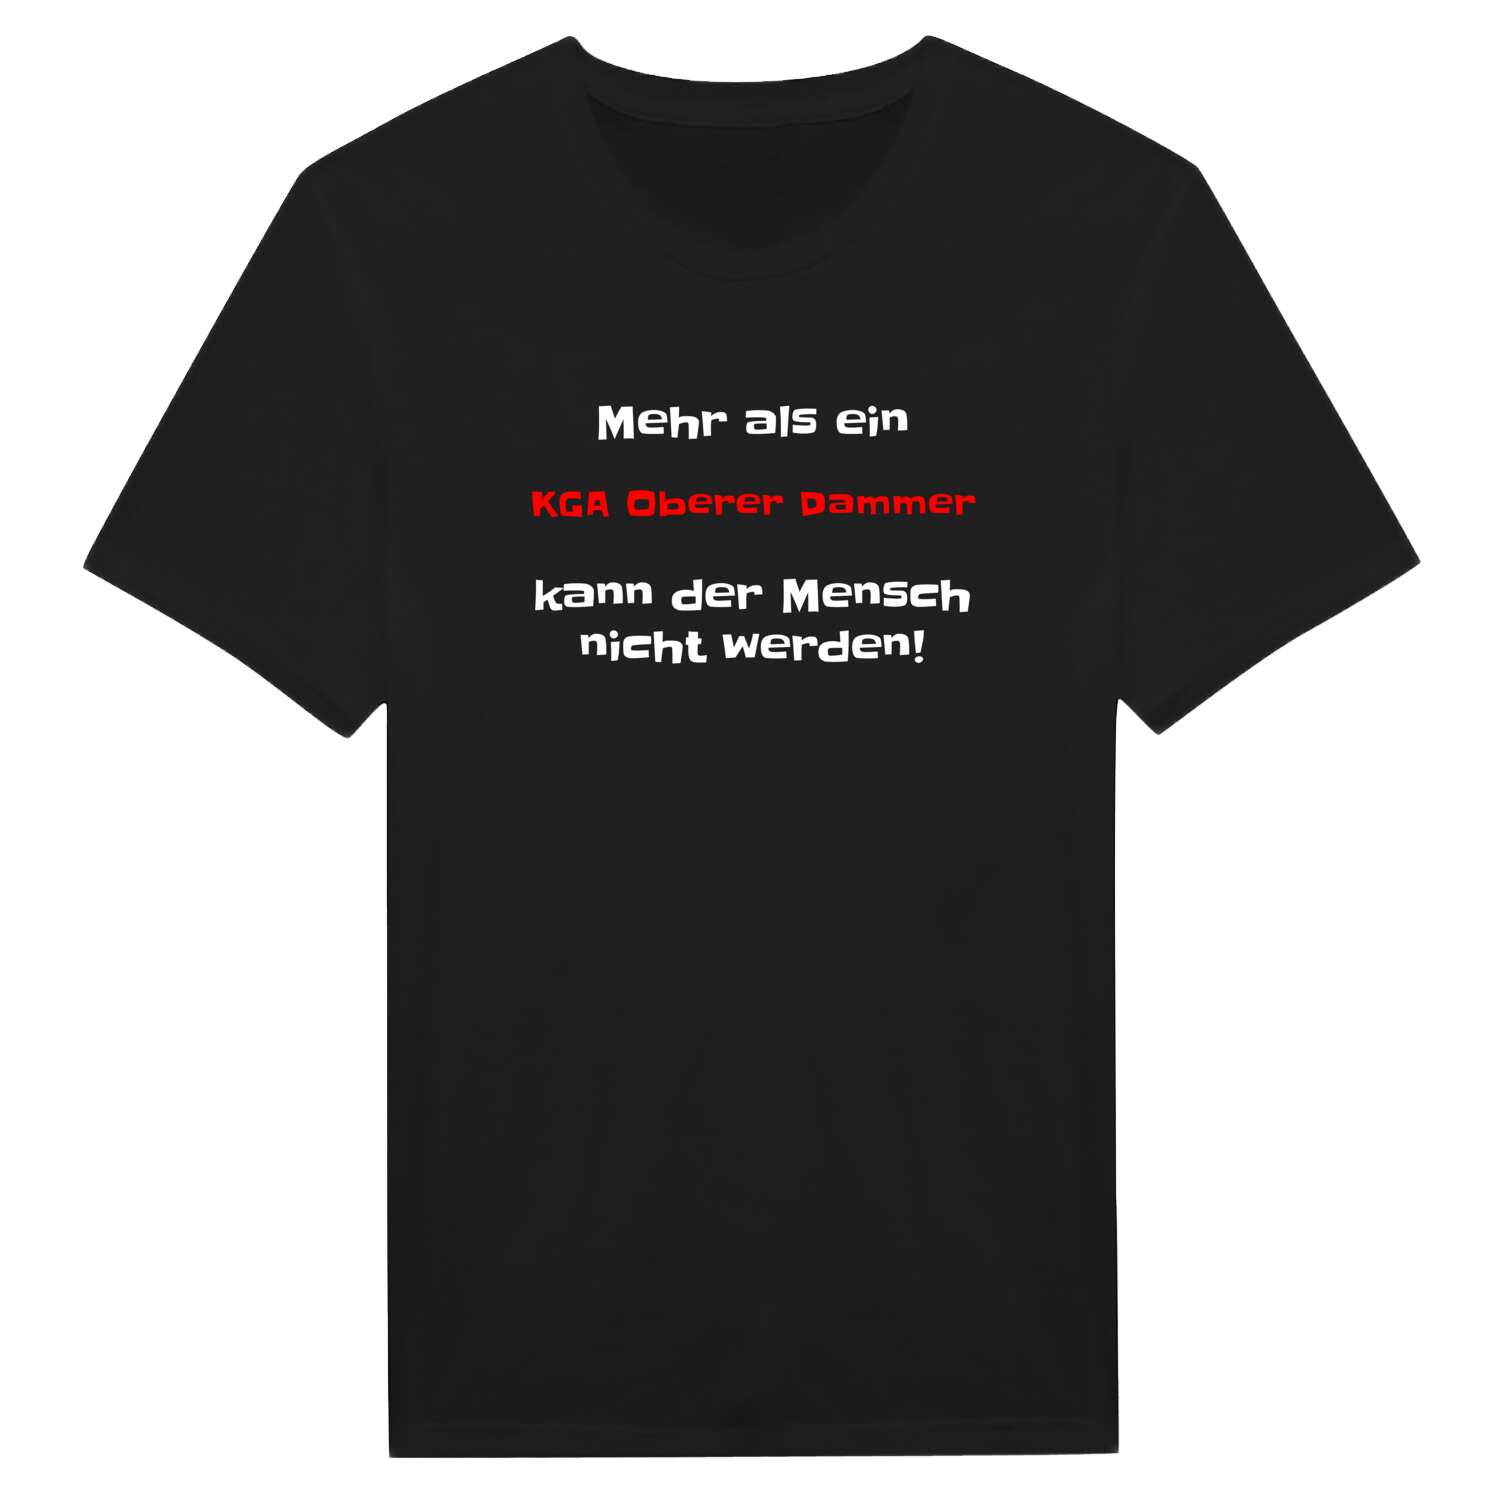 KGA Oberer Damm T-Shirt »Mehr als ein«